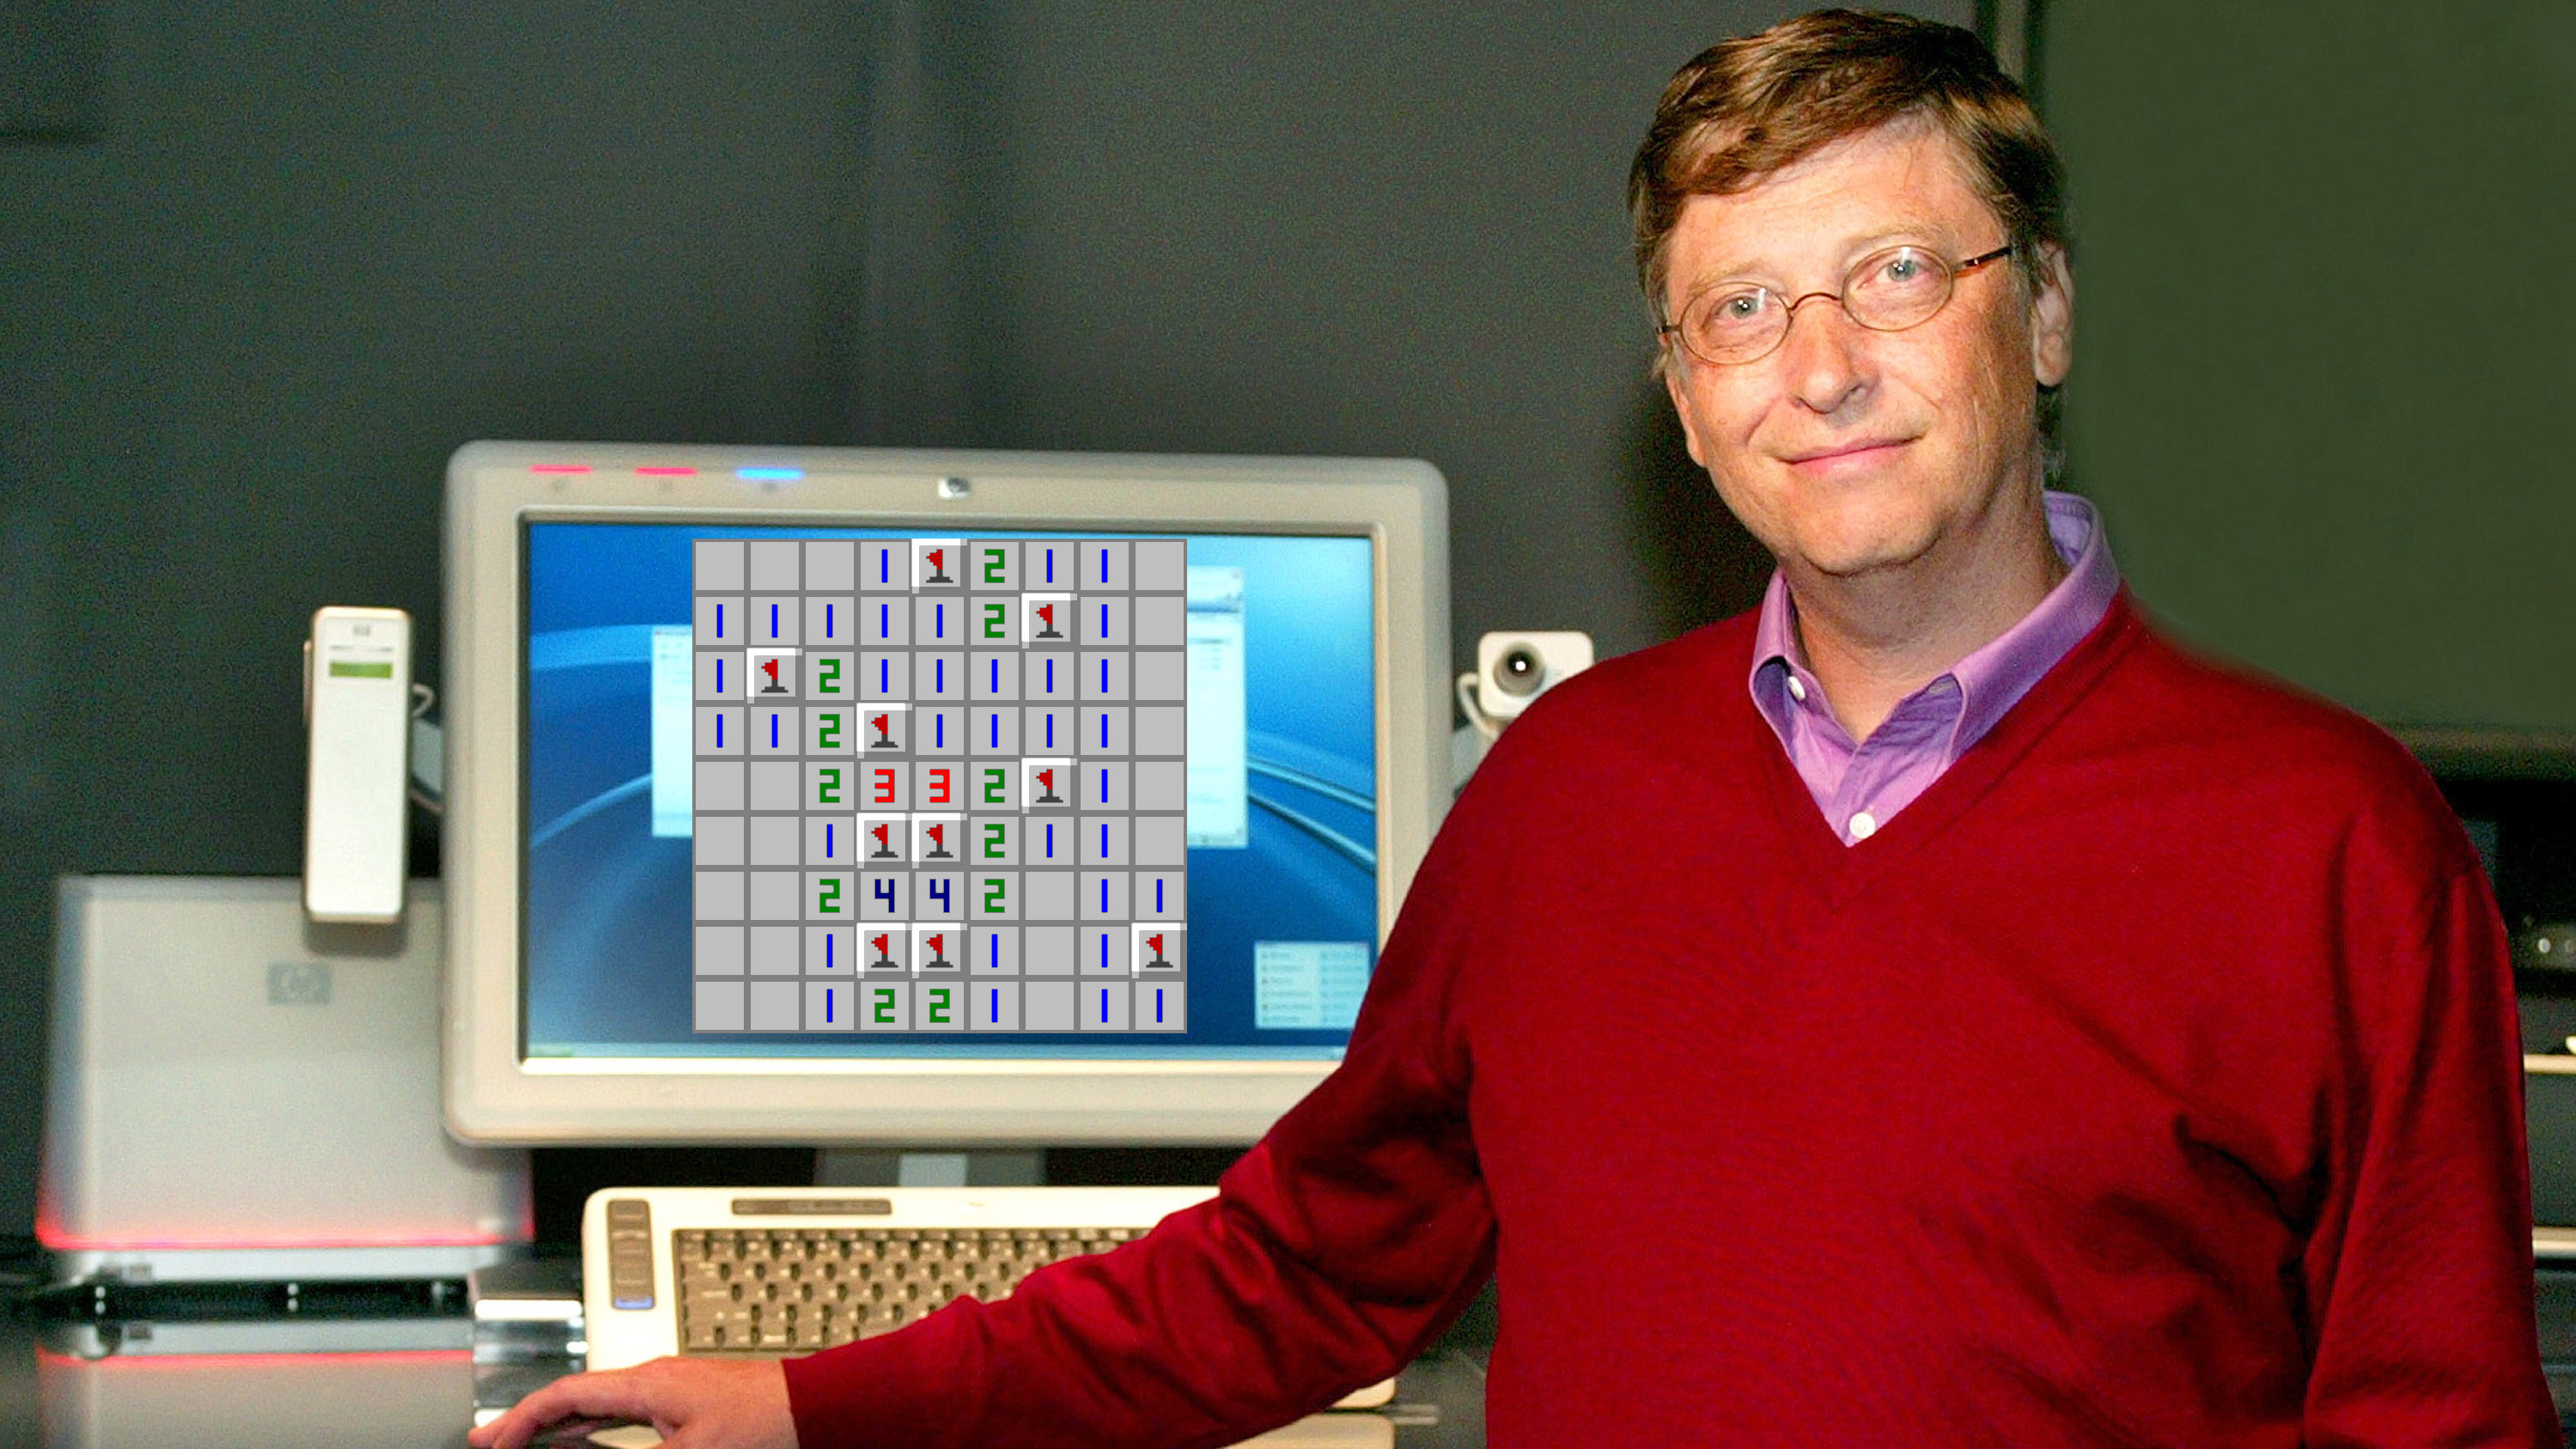 O zamanlar Bill Gates, Mayın Tarlası'nın yüksek puanlarına o kadar kafayı takmıştı ki Microsoft çalışanları onun yenemeyeceği bir Mayın Tarlası bulmak zorunda kaldı.